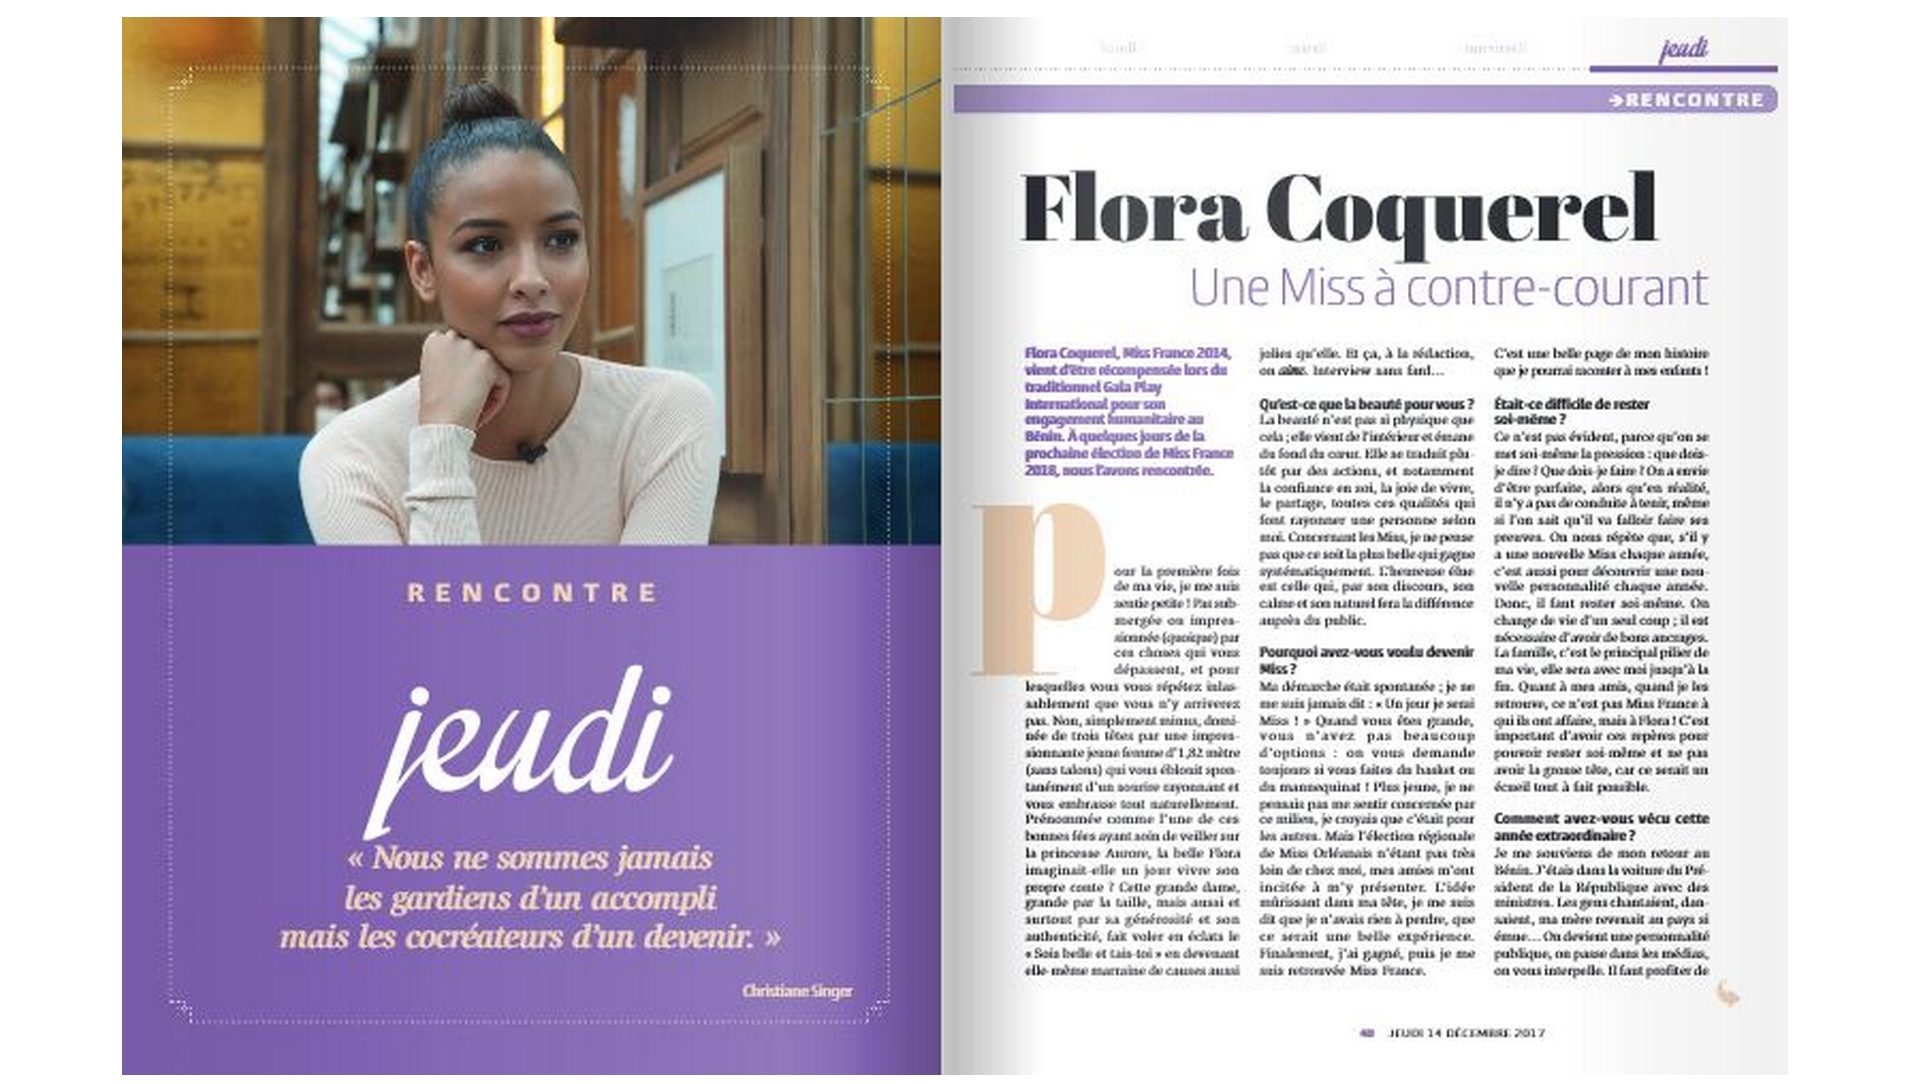 Le magazine féminin catholique "Aime" est un nouveau venu  du paysage médiatique français